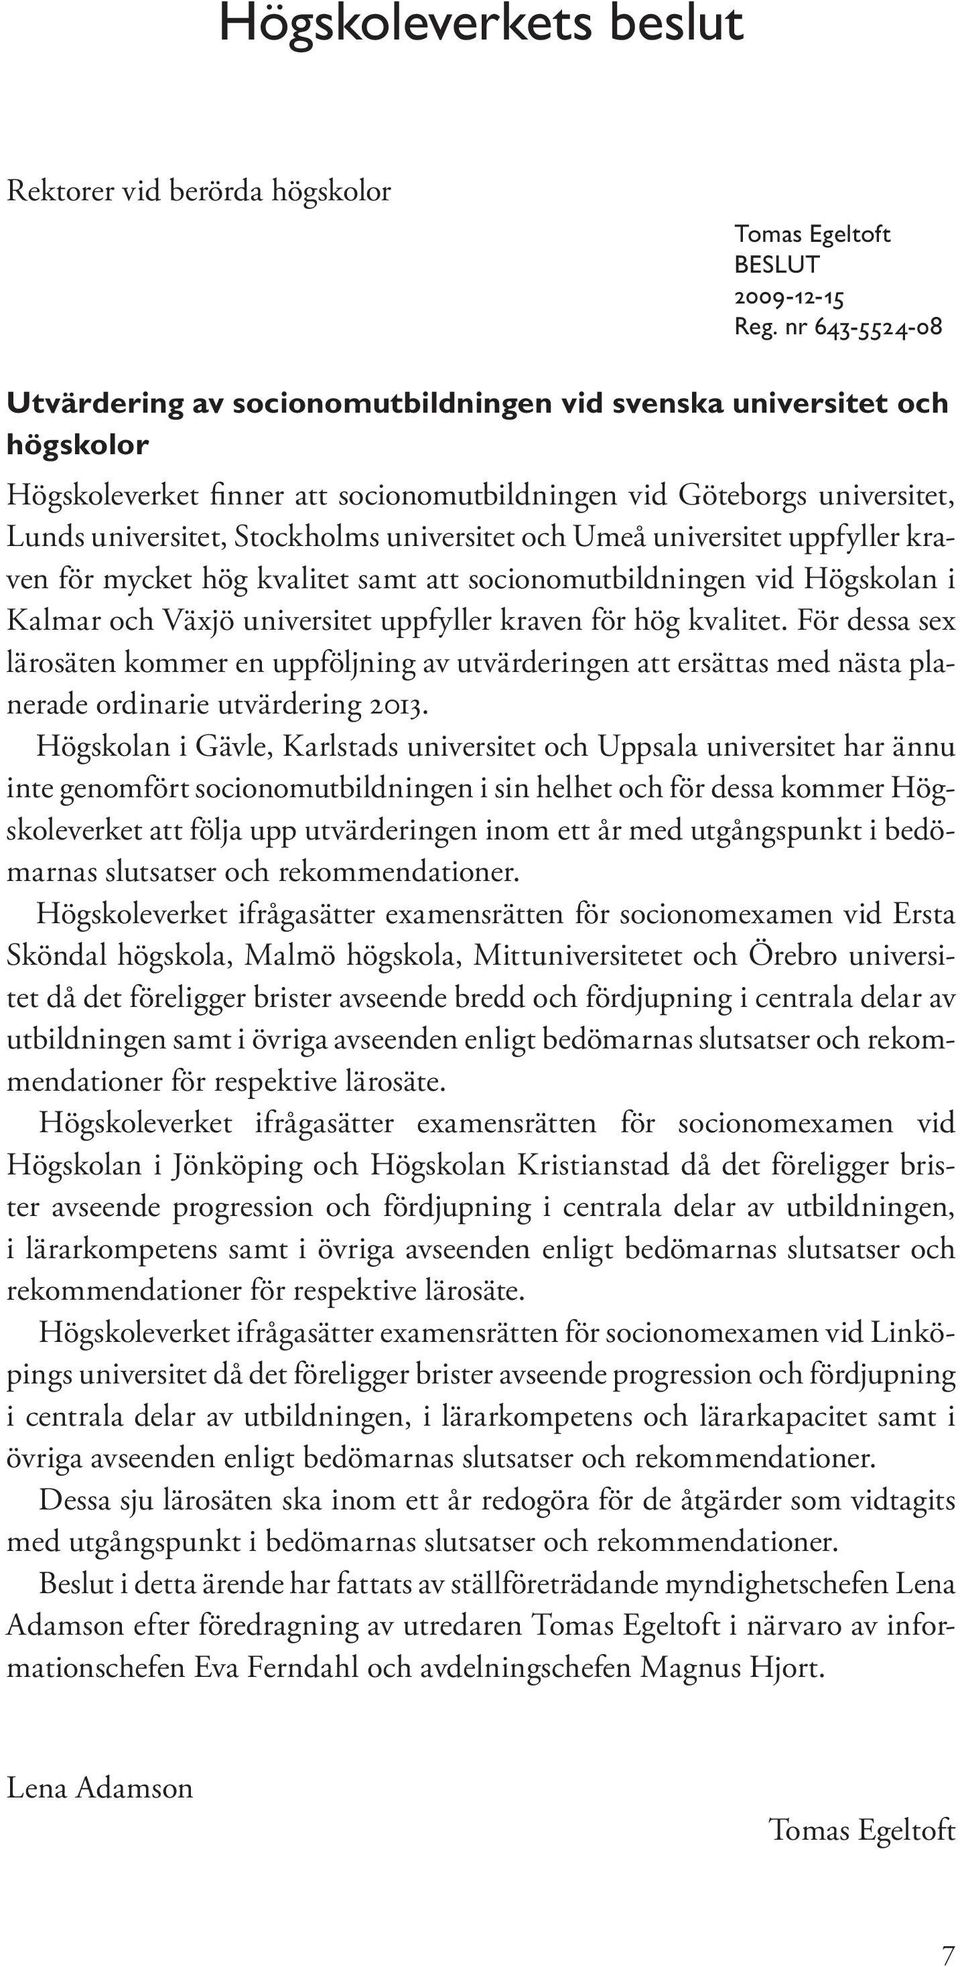 universitet och Umeå universitet uppfyller kraven för mycket hög kvalitet samt att socionomutbildningen vid Högskolan i Kalmar och Växjö universitet uppfyller kraven för hög kvalitet.